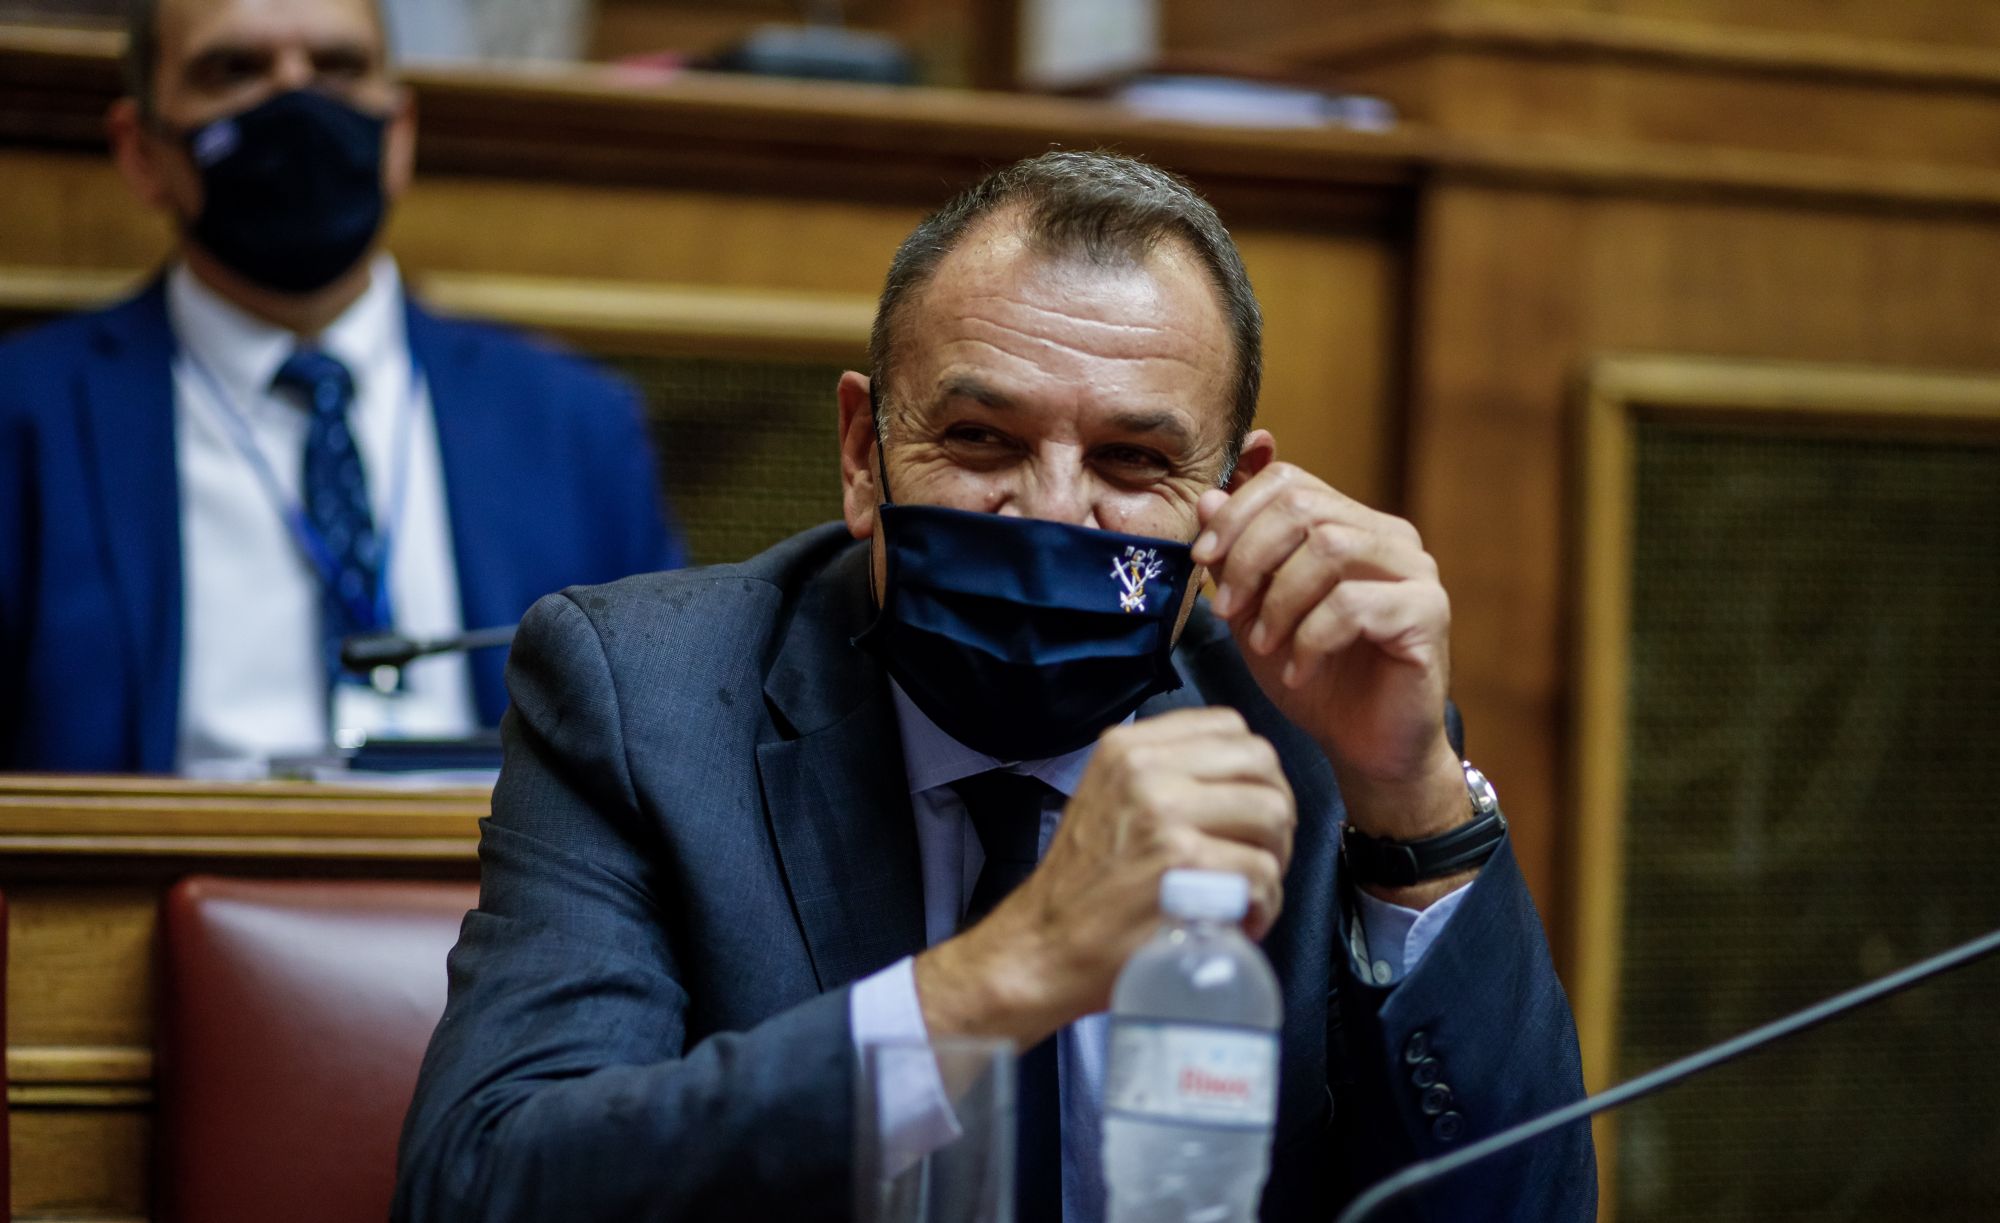 Τραγέλαφος: Ο υπουργός Άμυνας ρώτησε σε ζωντανή μετάδοση εάν πρέπει να βάλει μάσκα (βίντεο)